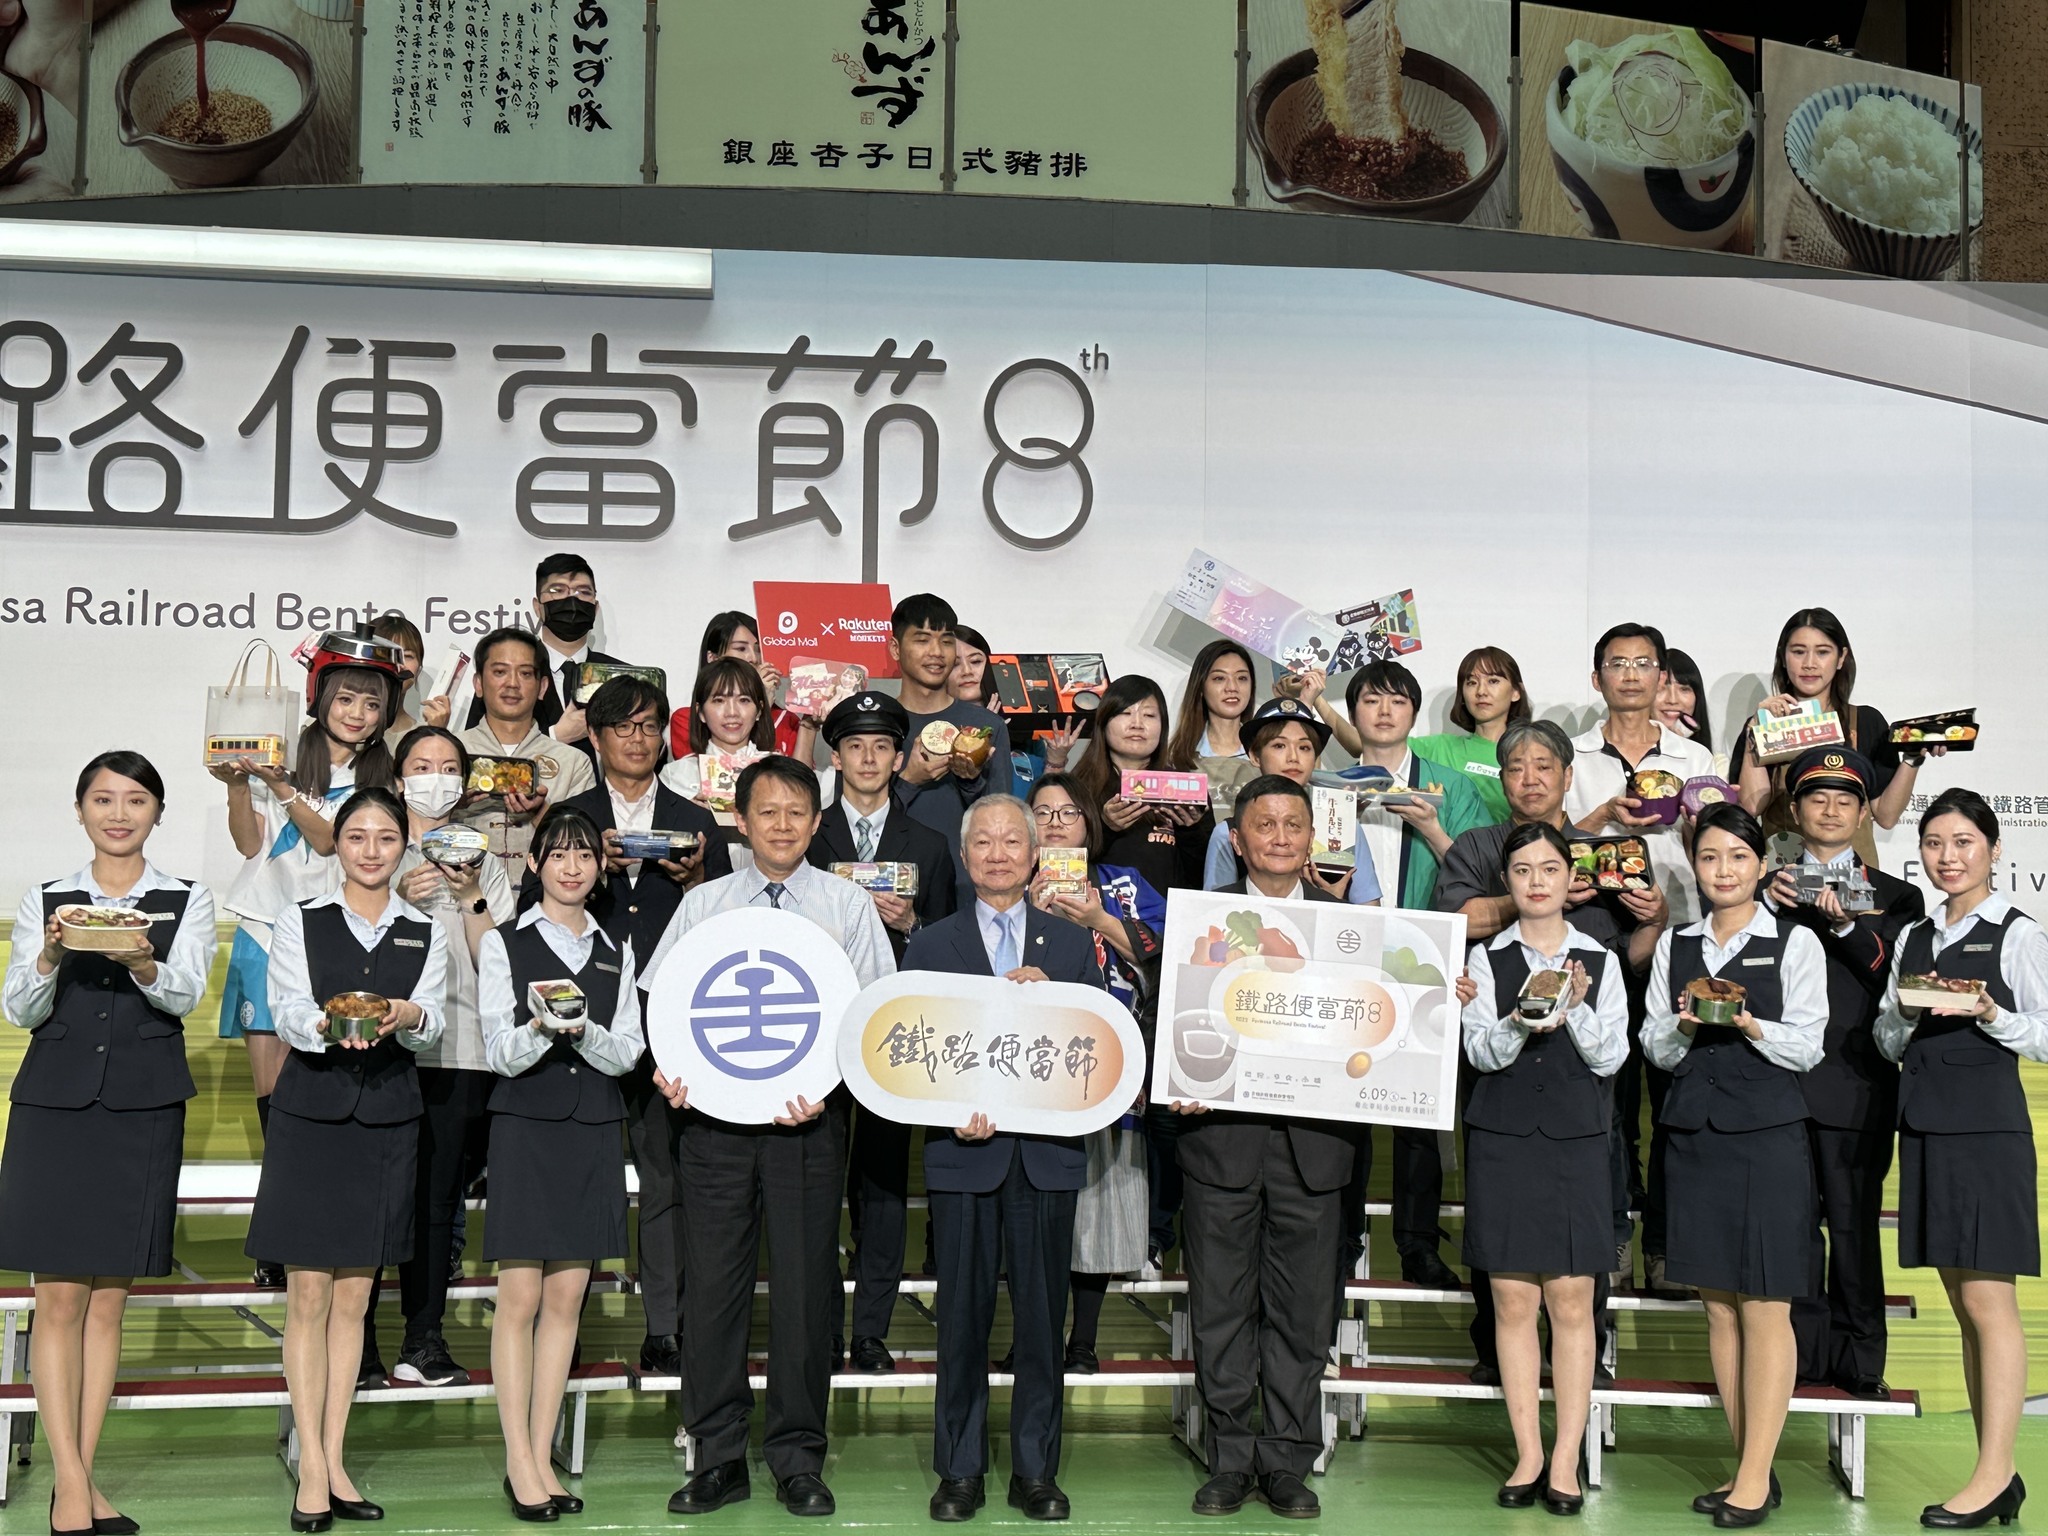 การรถไฟไต้หวันจะจัดงานเทศกาลข้าวกล่องรถไฟขึ้นในระหว่างวันที่ 9 ถึง 12 มิถุนายนนี้ ที่โถงอเนกประสงค์ของสถานีรถไฟกรุงไทเป ภาพ／นำมาจากเฟสบุ๊ก交通部臺灣鐵路管理局TRA